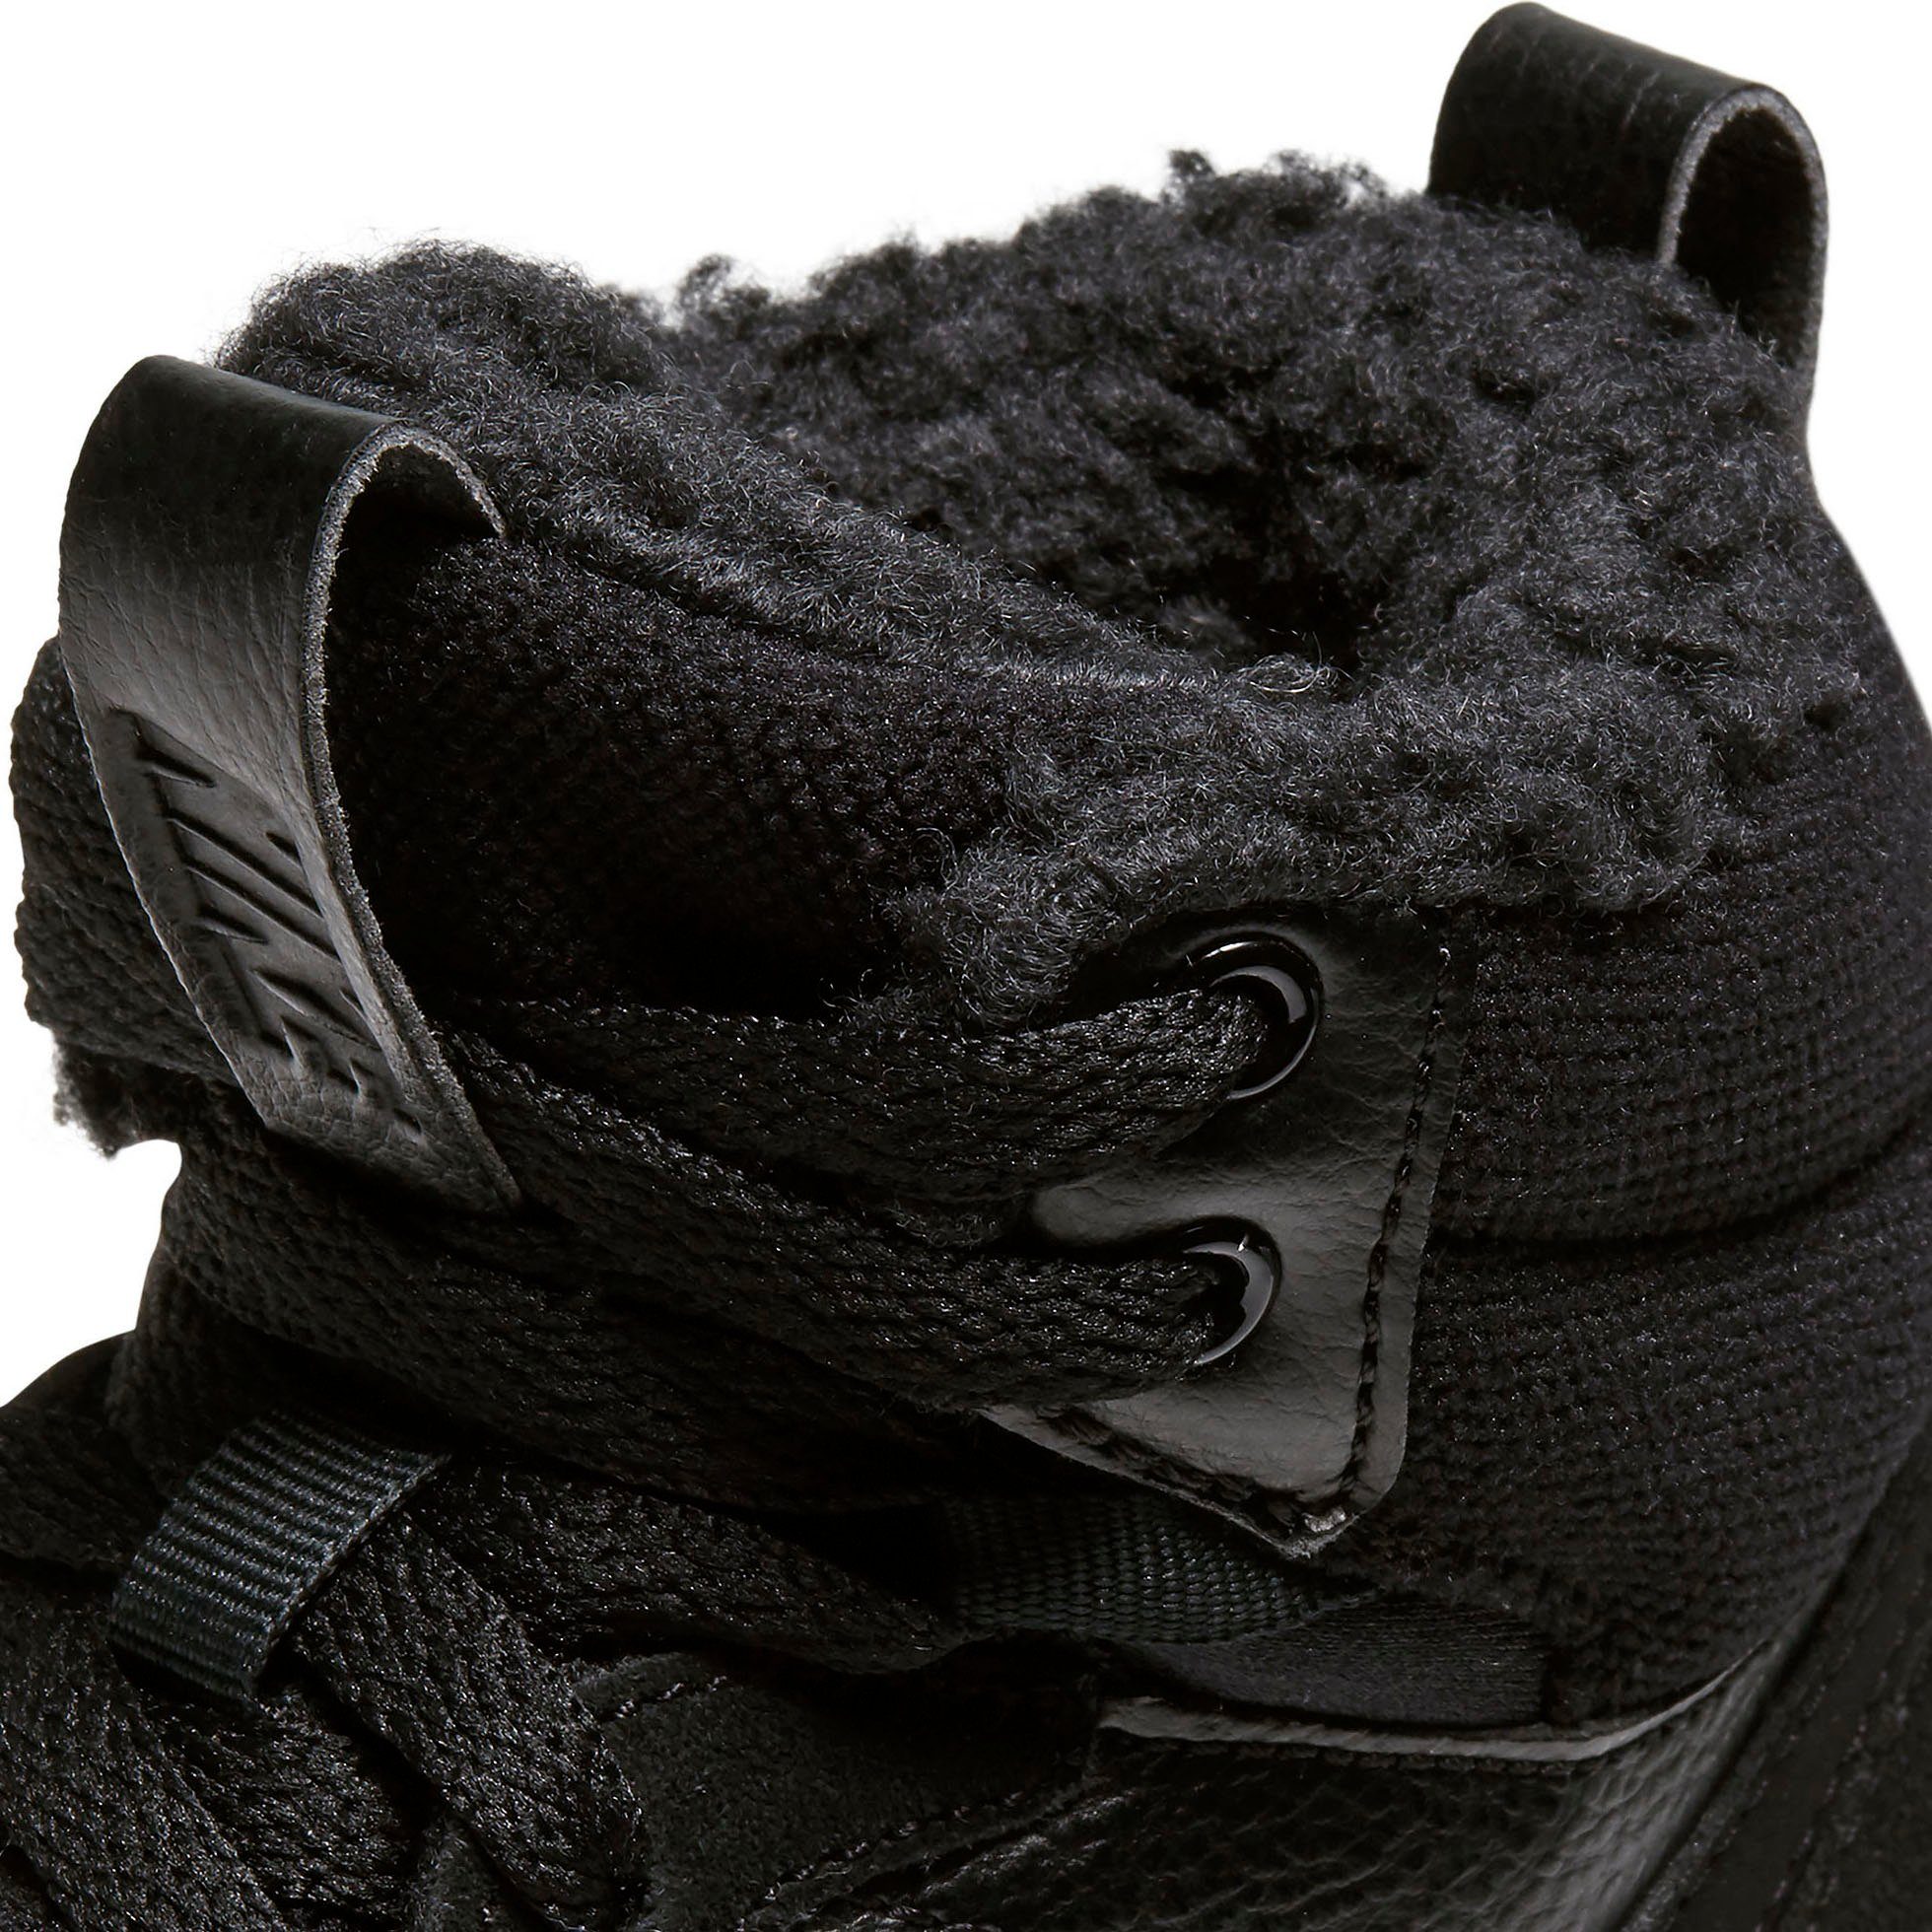 COURT den 1 MID Design auf BOROUGH Sportswear Air Force Nike des Spuren 2 Sneaker